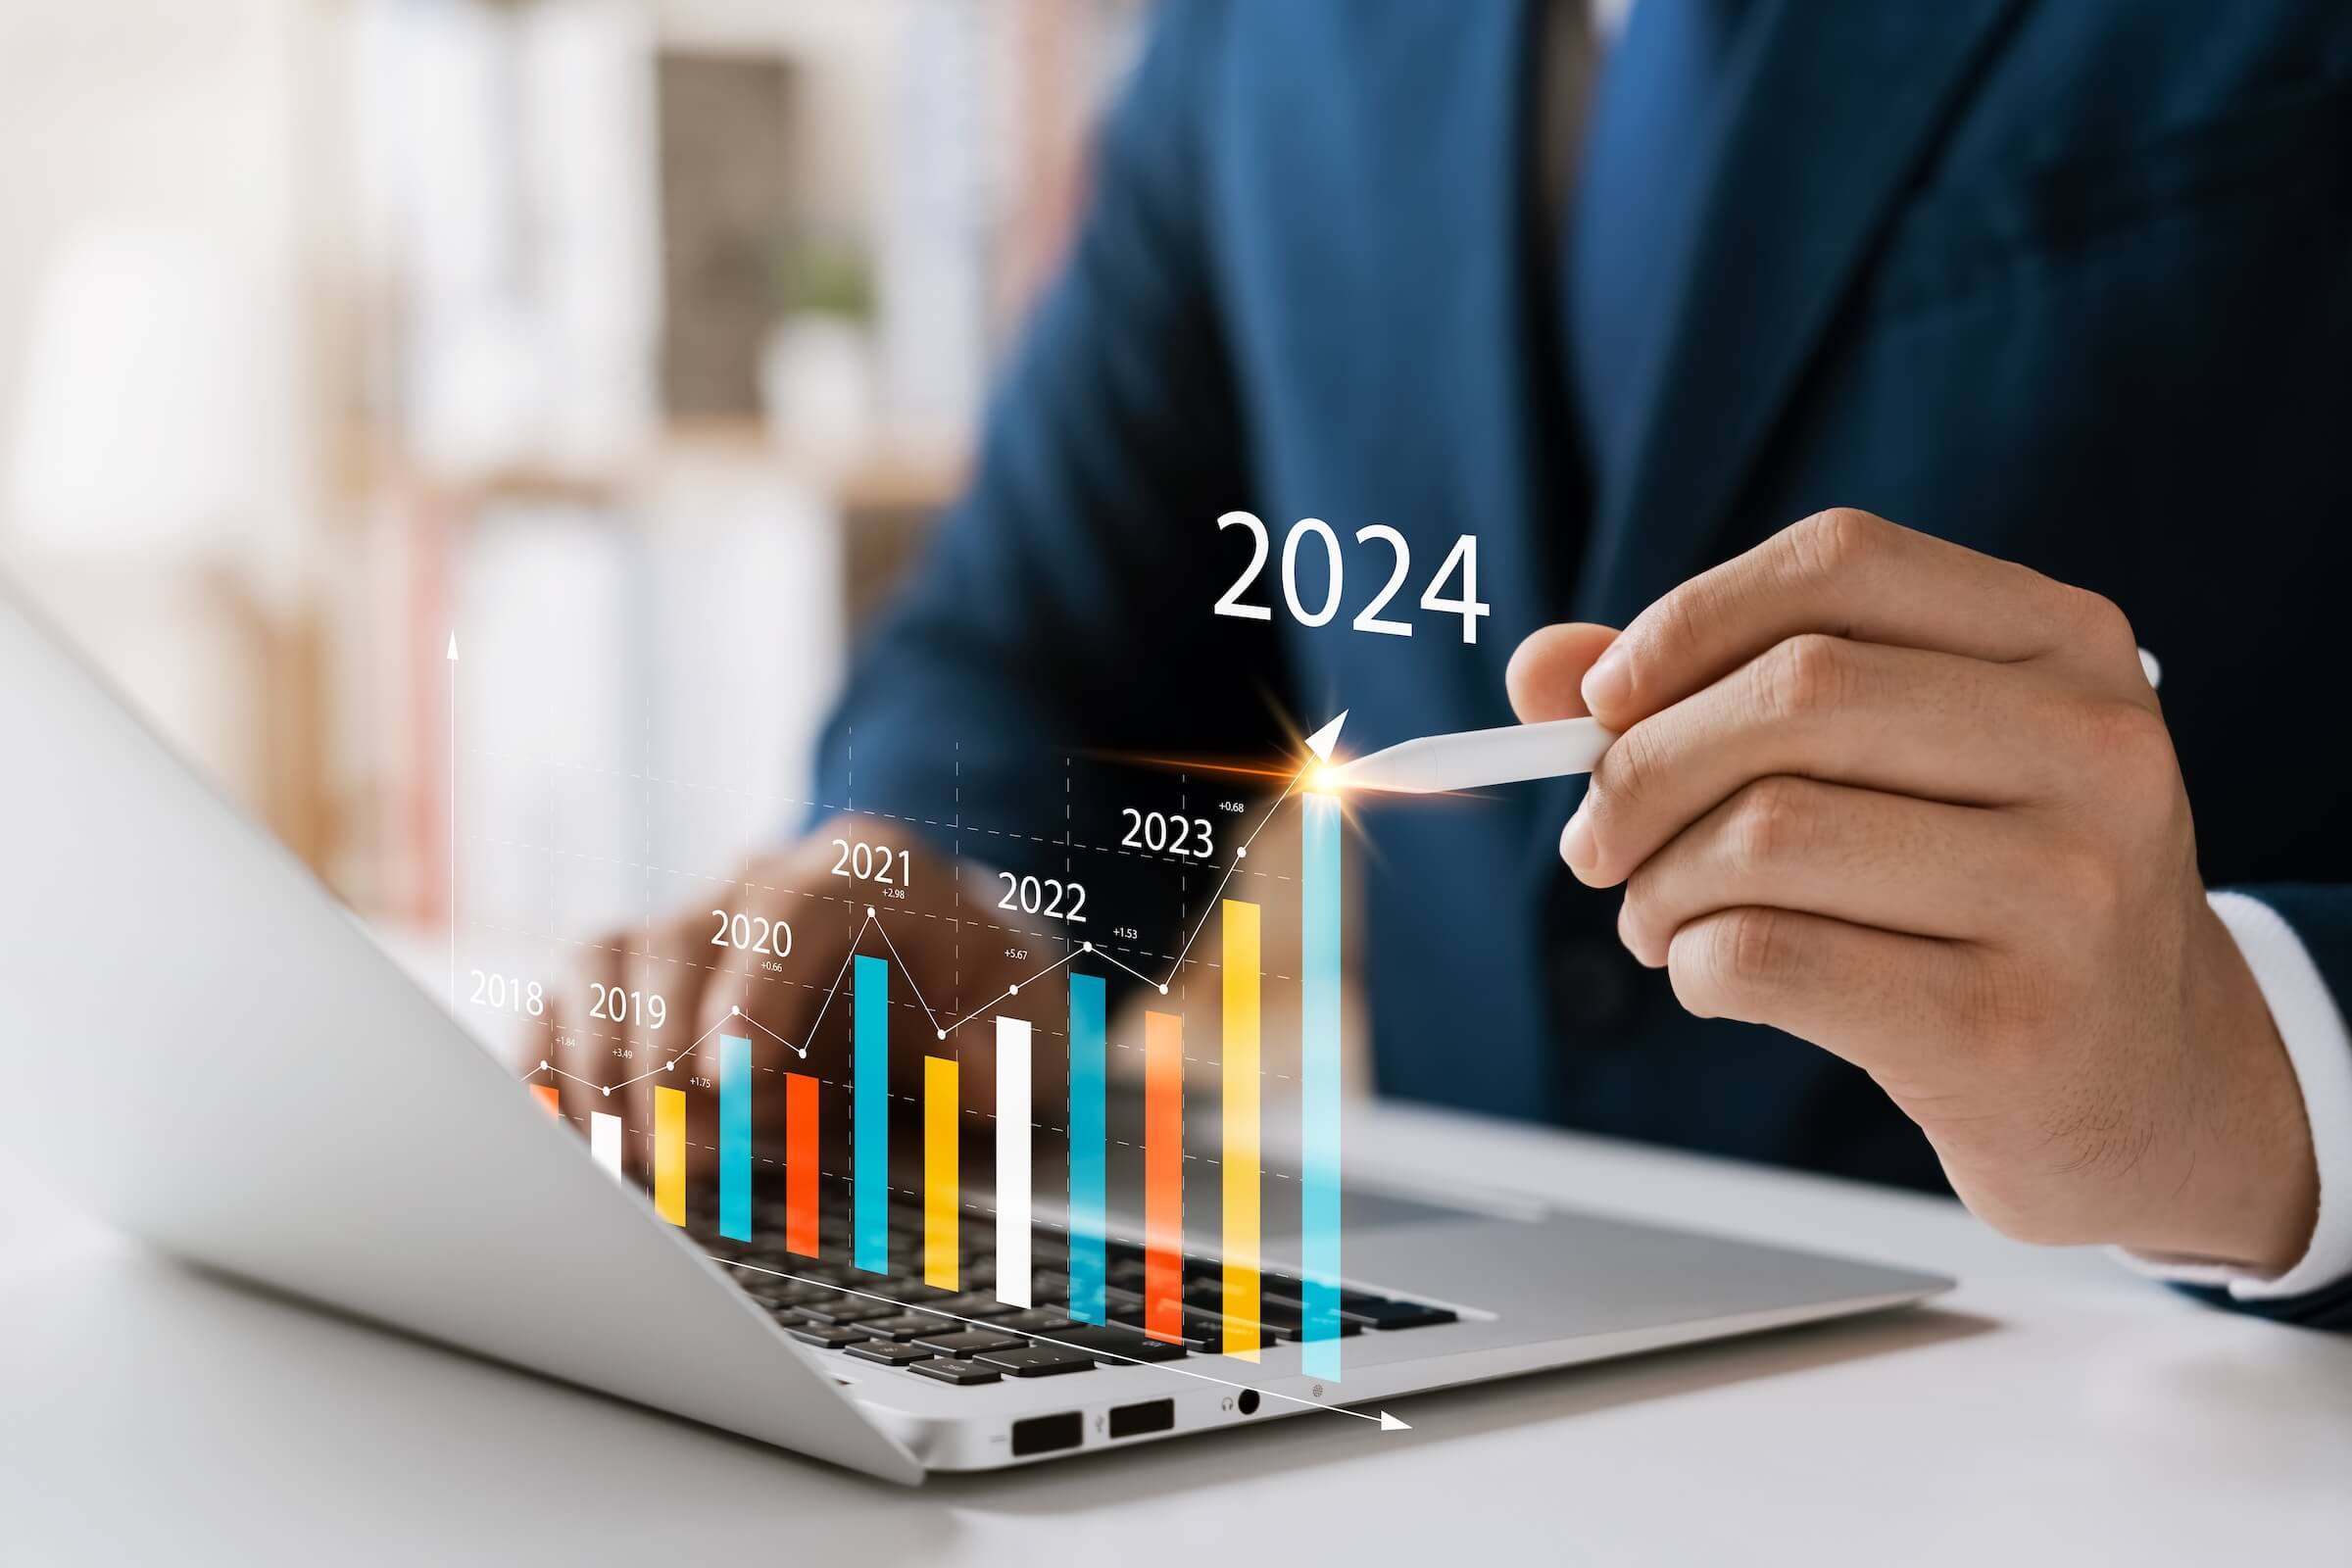 Biznesmen analizuje rentowność działających firm za pomocą cyfrowej grafiki rzeczywistości rozszerzonej, pozytywne wskaźniki w 2024 r